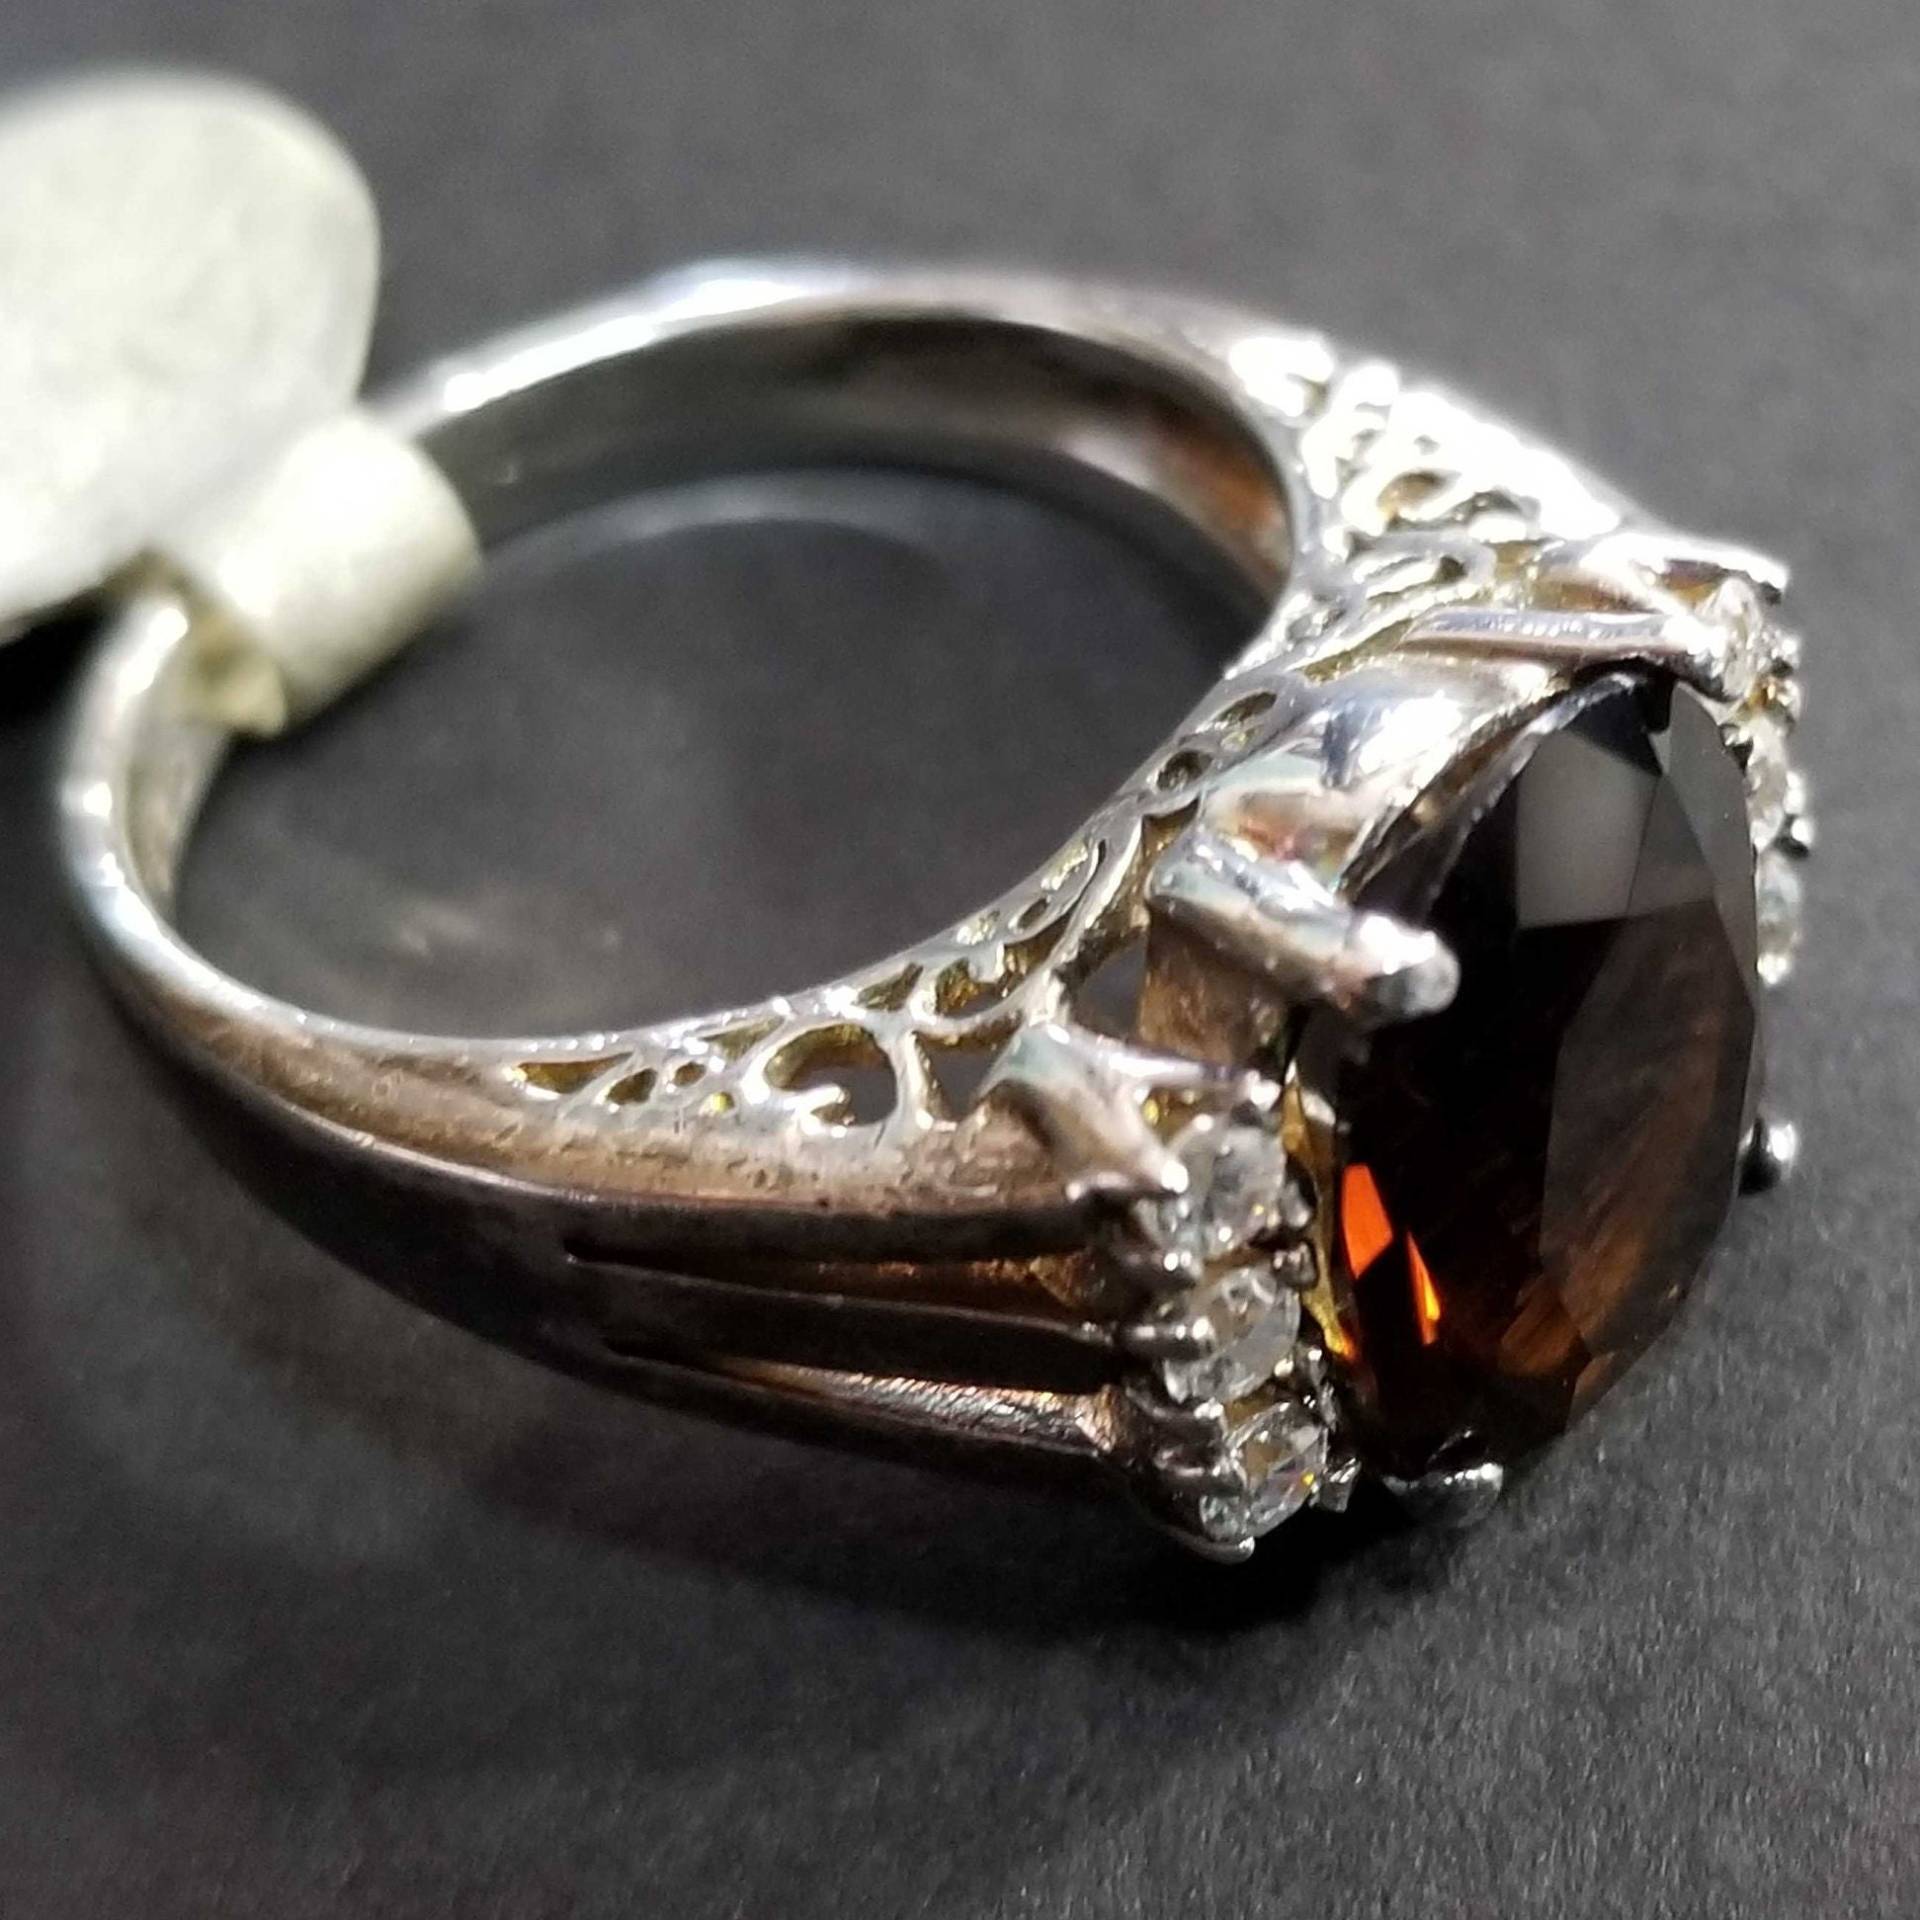 Größe 7 Rauchquarz Cz Sterling Silber Ring, Oval Braun Vintage Damen Ehering Geburtstag Geschenk Skorpion von BlueMoonTrader